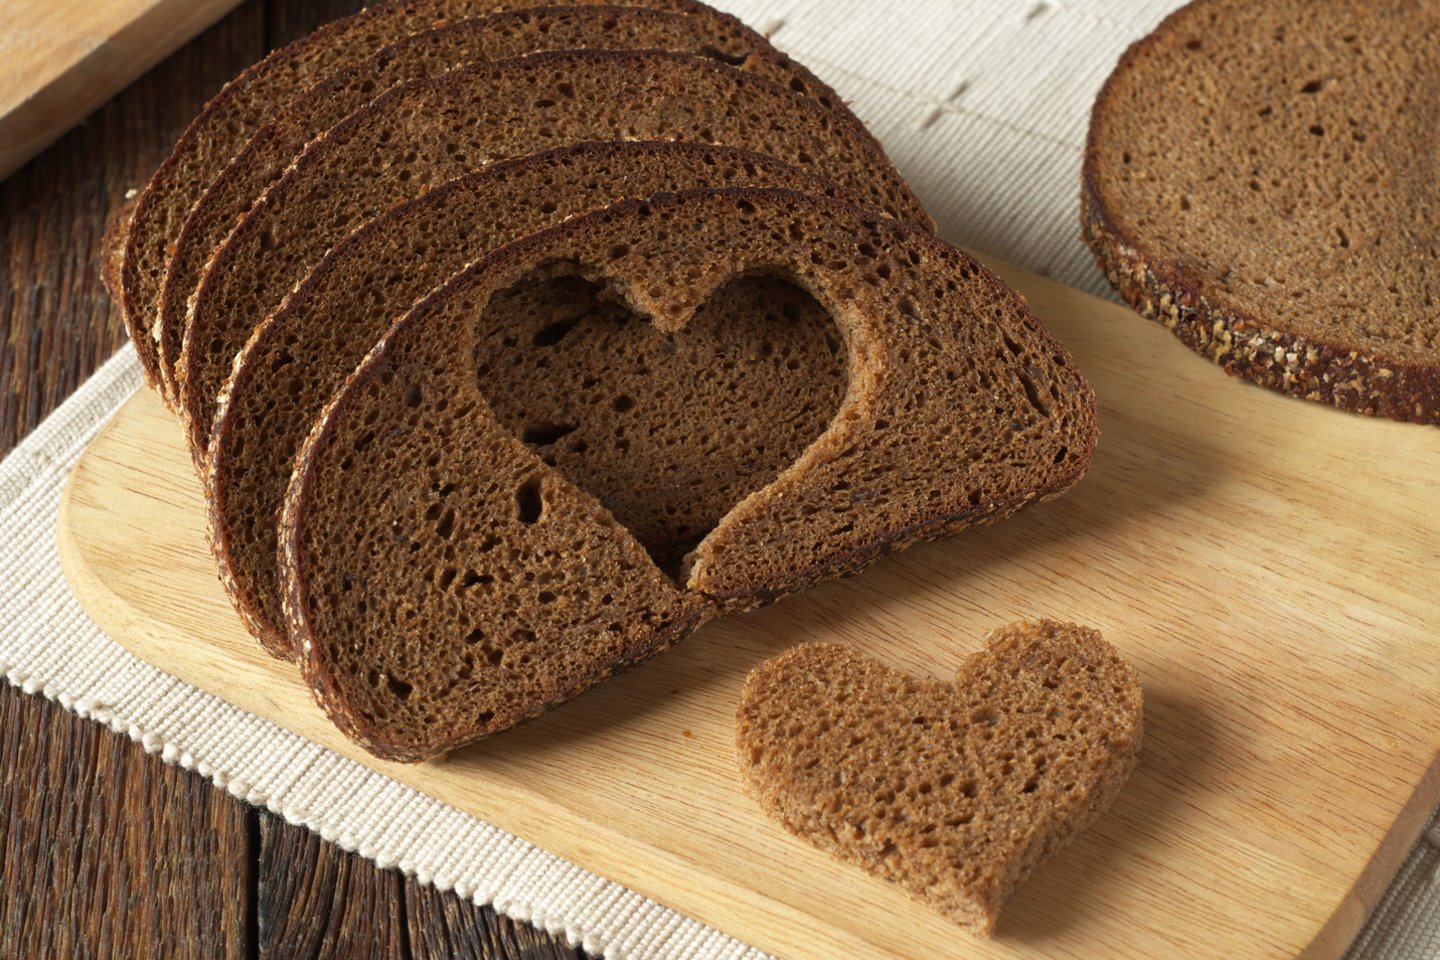 Vienas duonos raugo ypatumų, jog jis leidžia ženkliai sumažinti ar net visai atsisakyti duonos kepimo procese dažnai naudojamo cukraus. <br> 123rf nuotr.